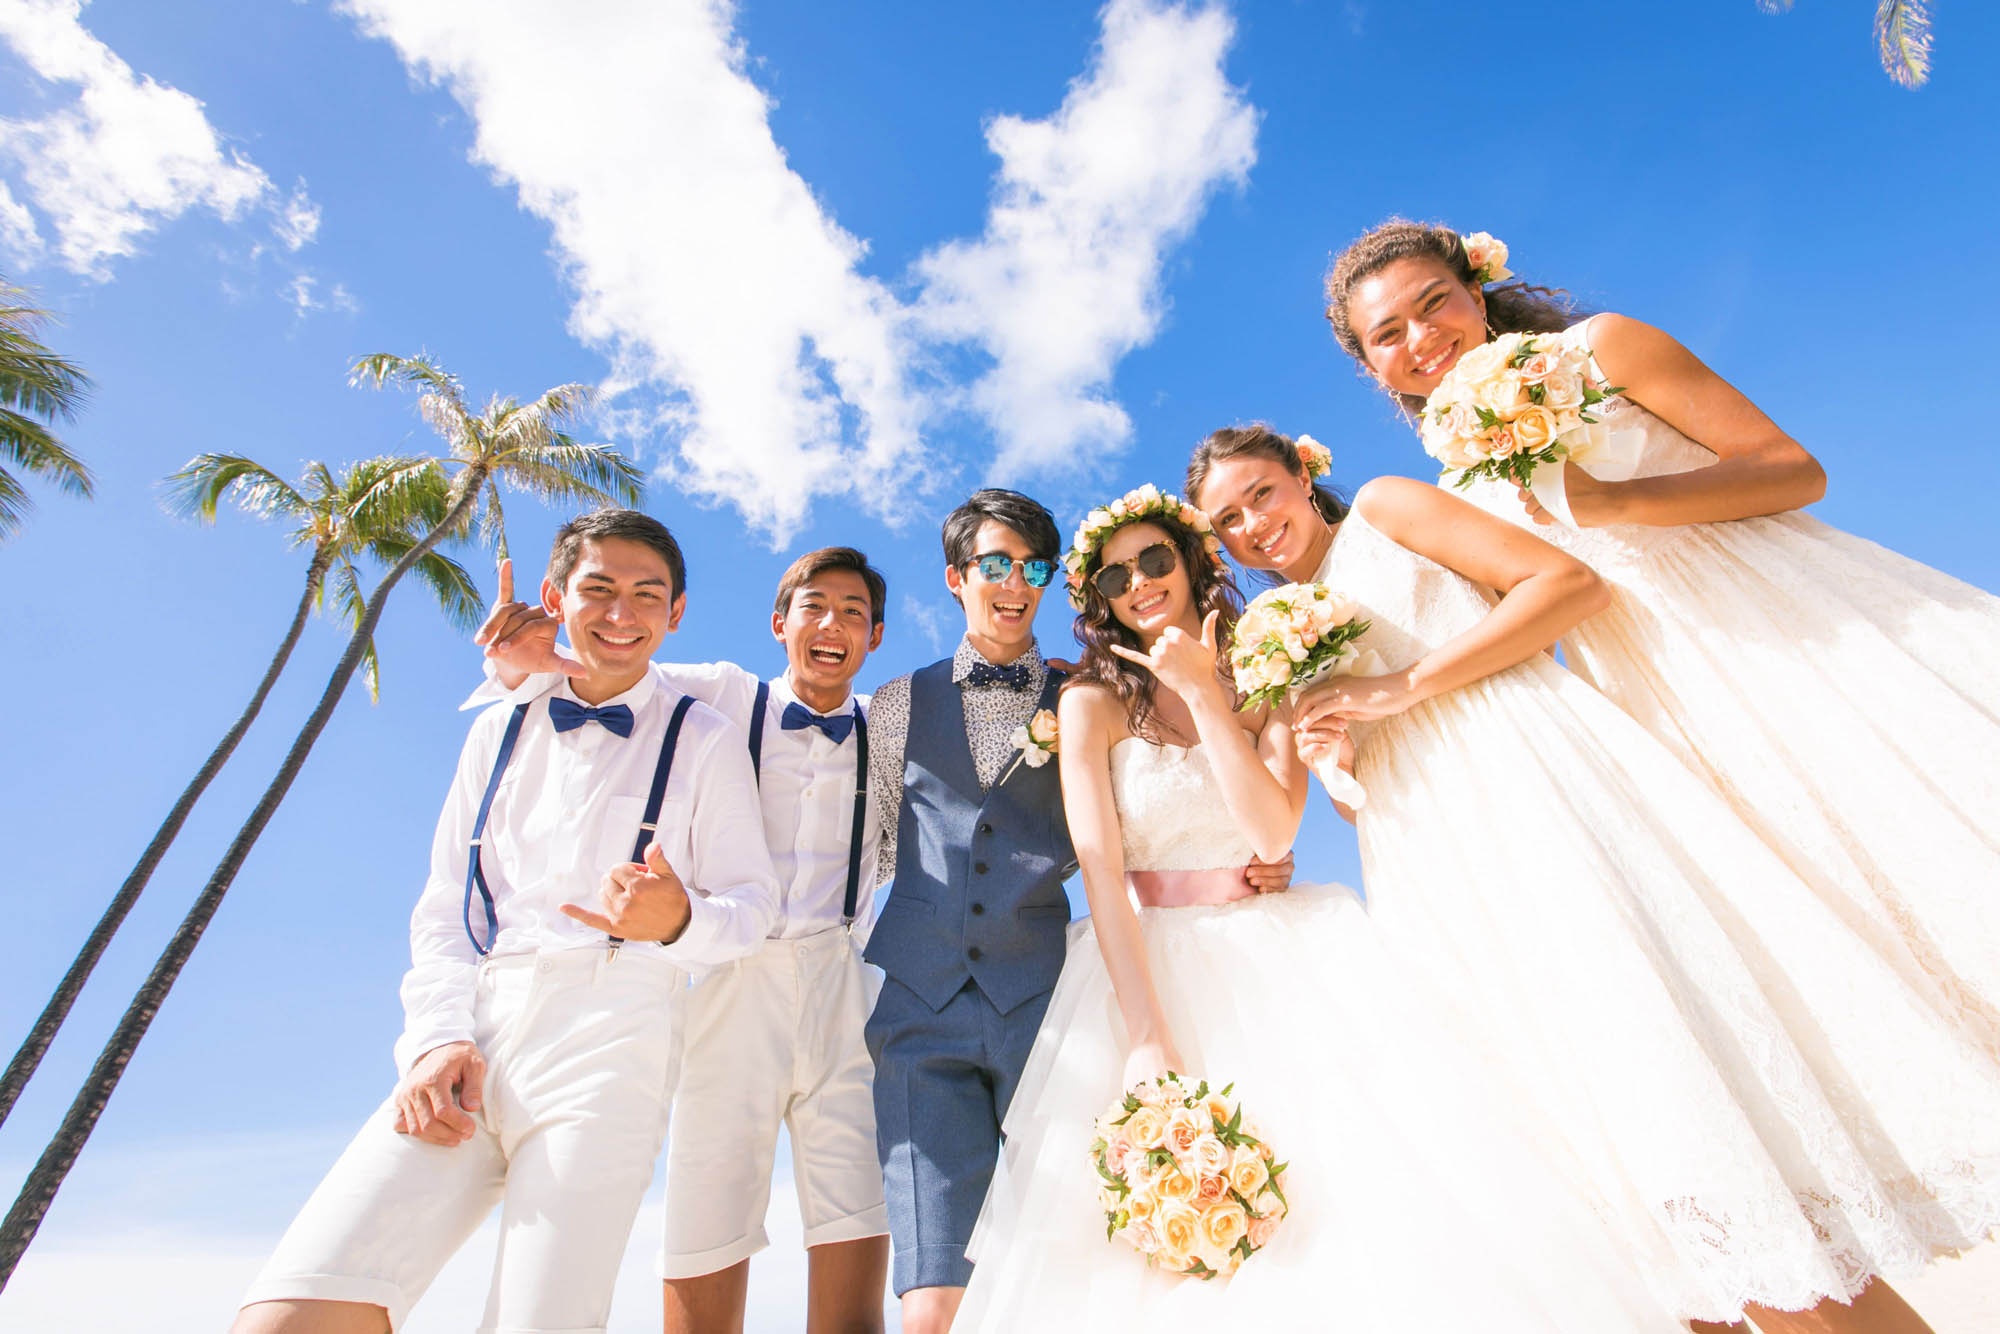 ++ 50 ++ ハワイ 結婚式 ふたりだけ 310783ハワイ 結婚式 ふたりだけ Potoapixnananc